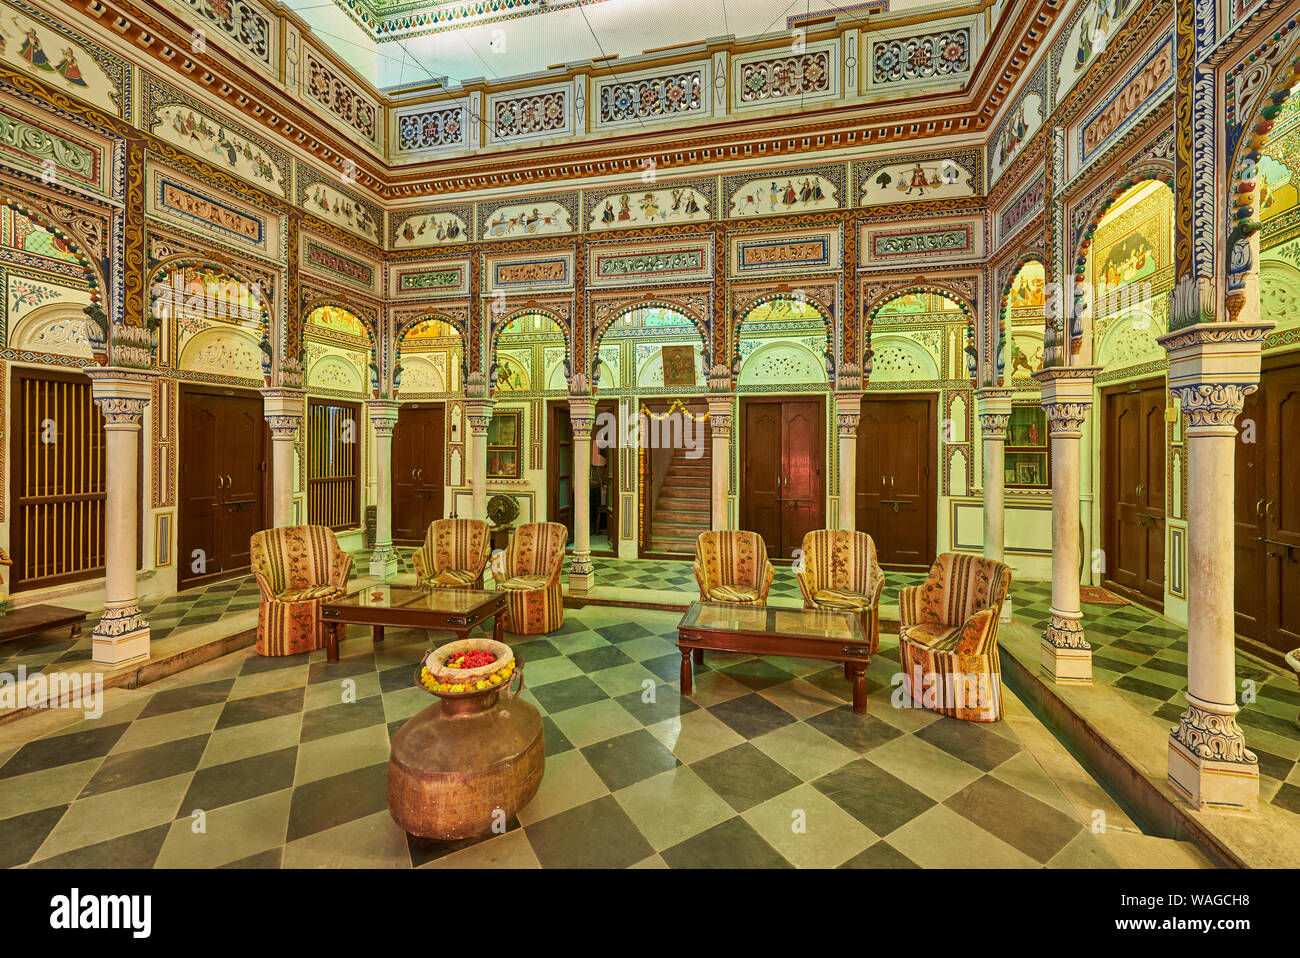 interior shot of strong decorated Hotel Heritage Mandawa, Shekhawati Region, Rajasthan, India Stock Photo